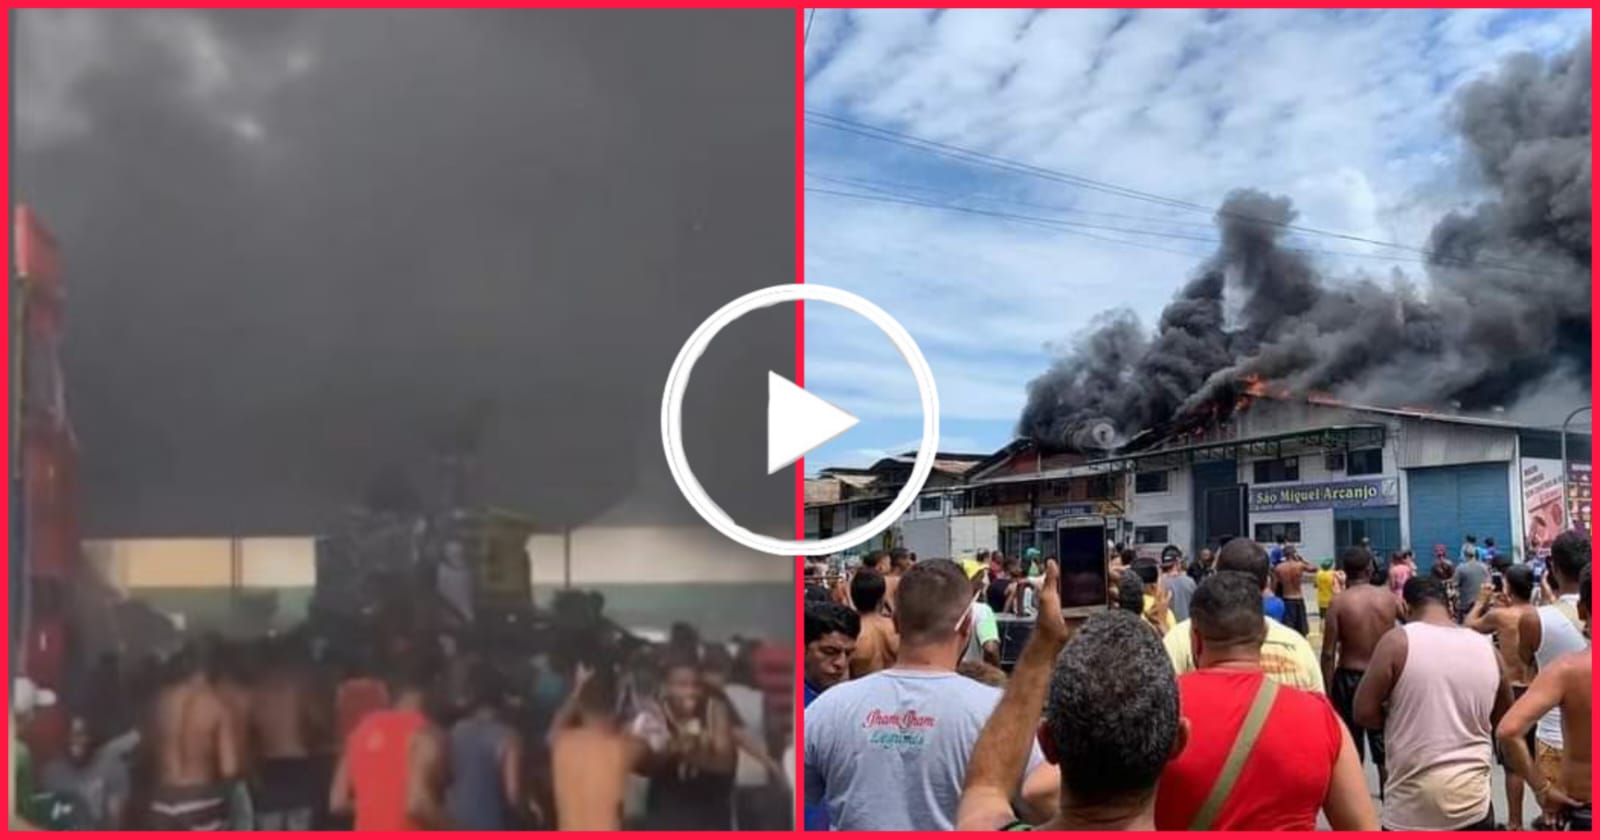 Urgente: Vídeo mostra confusão durante incêndio de lojas; Houve tiros e saques no local.